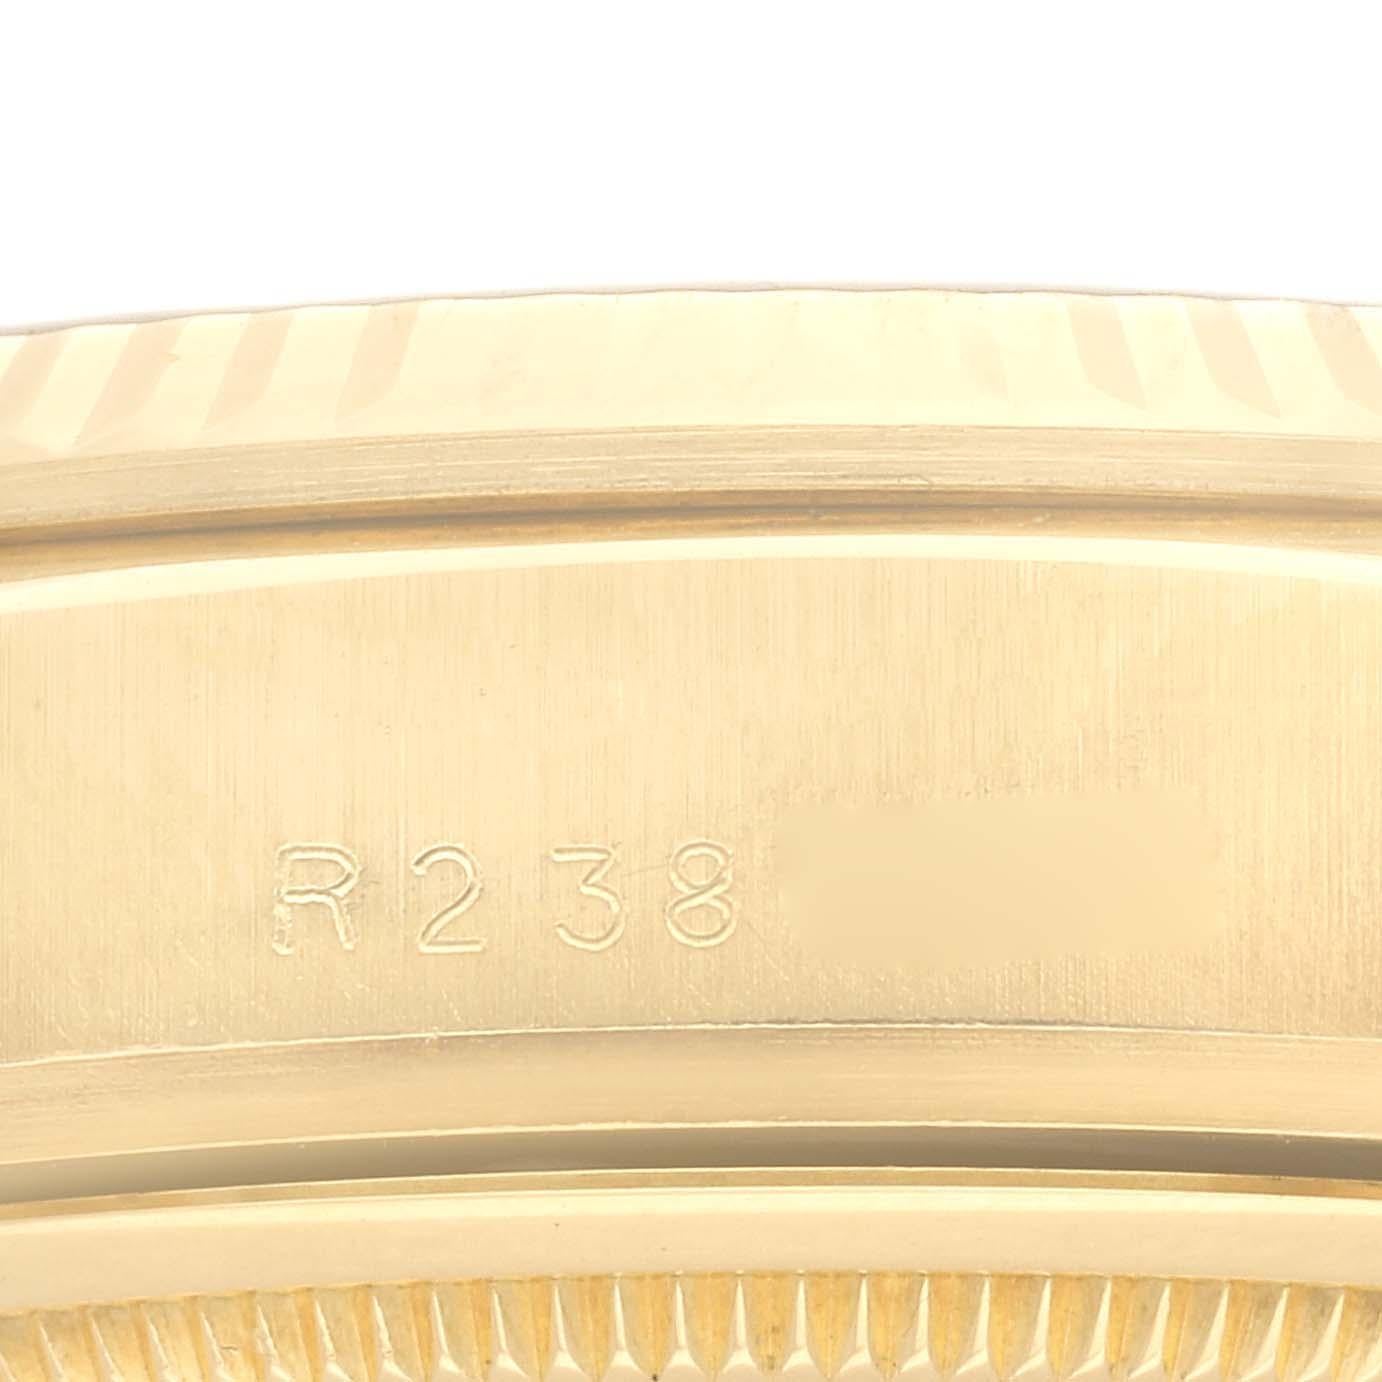 Rolex President Day-Date Montre homme en or jaune avec cadran à diamants 18038. Mouvement à remontage automatique certifié chronomètre. Boîtier en or jaune 18 carats de 36 mm de diamètre. Logo Rolex sur une couronne. Lunette cannelée en or jaune